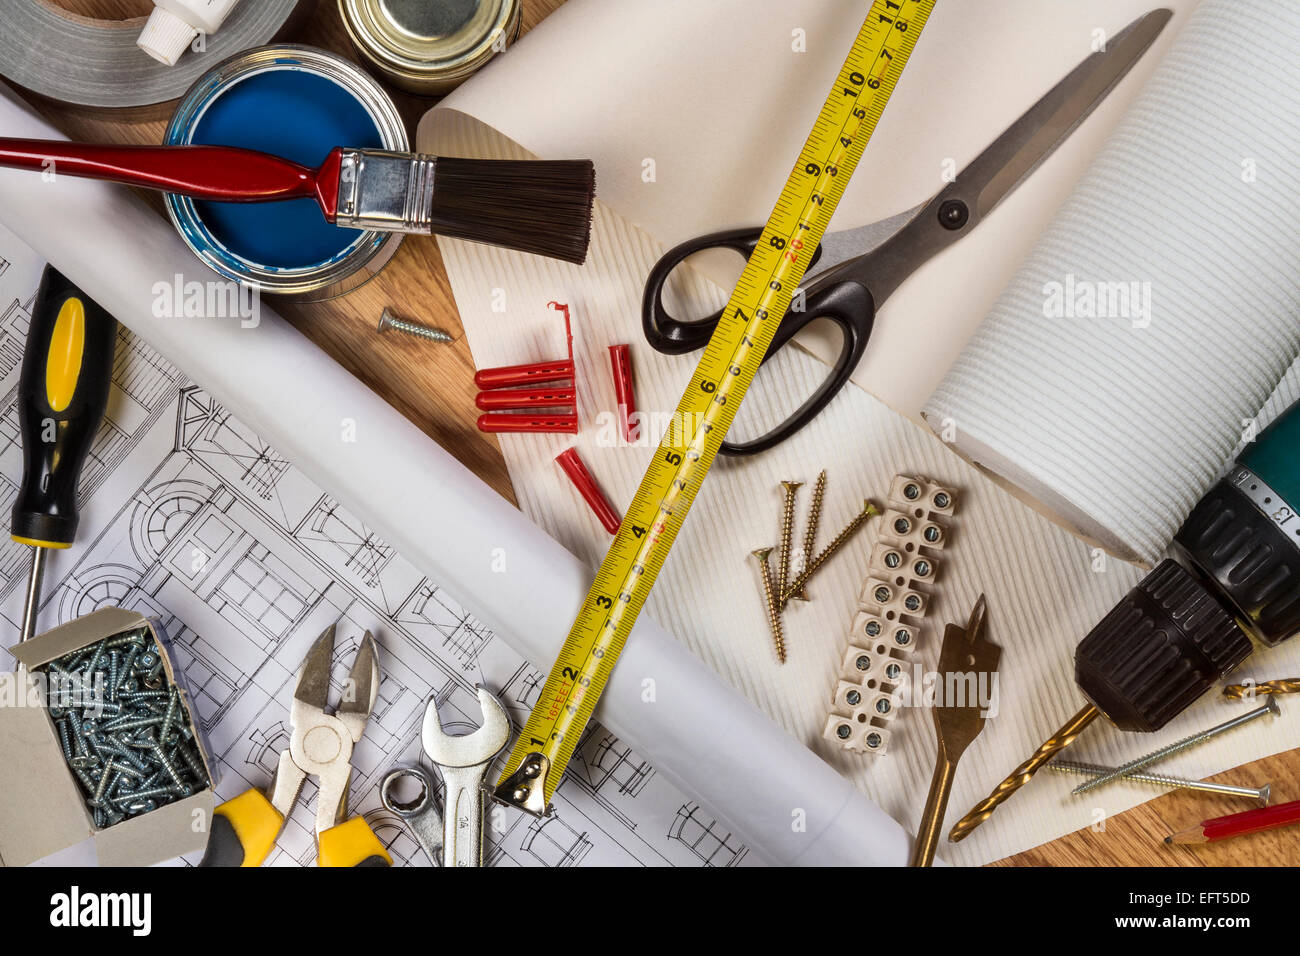 Una selección de herramientas utilizadas en el mantenimiento del hogar y la decoración. Foto de stock